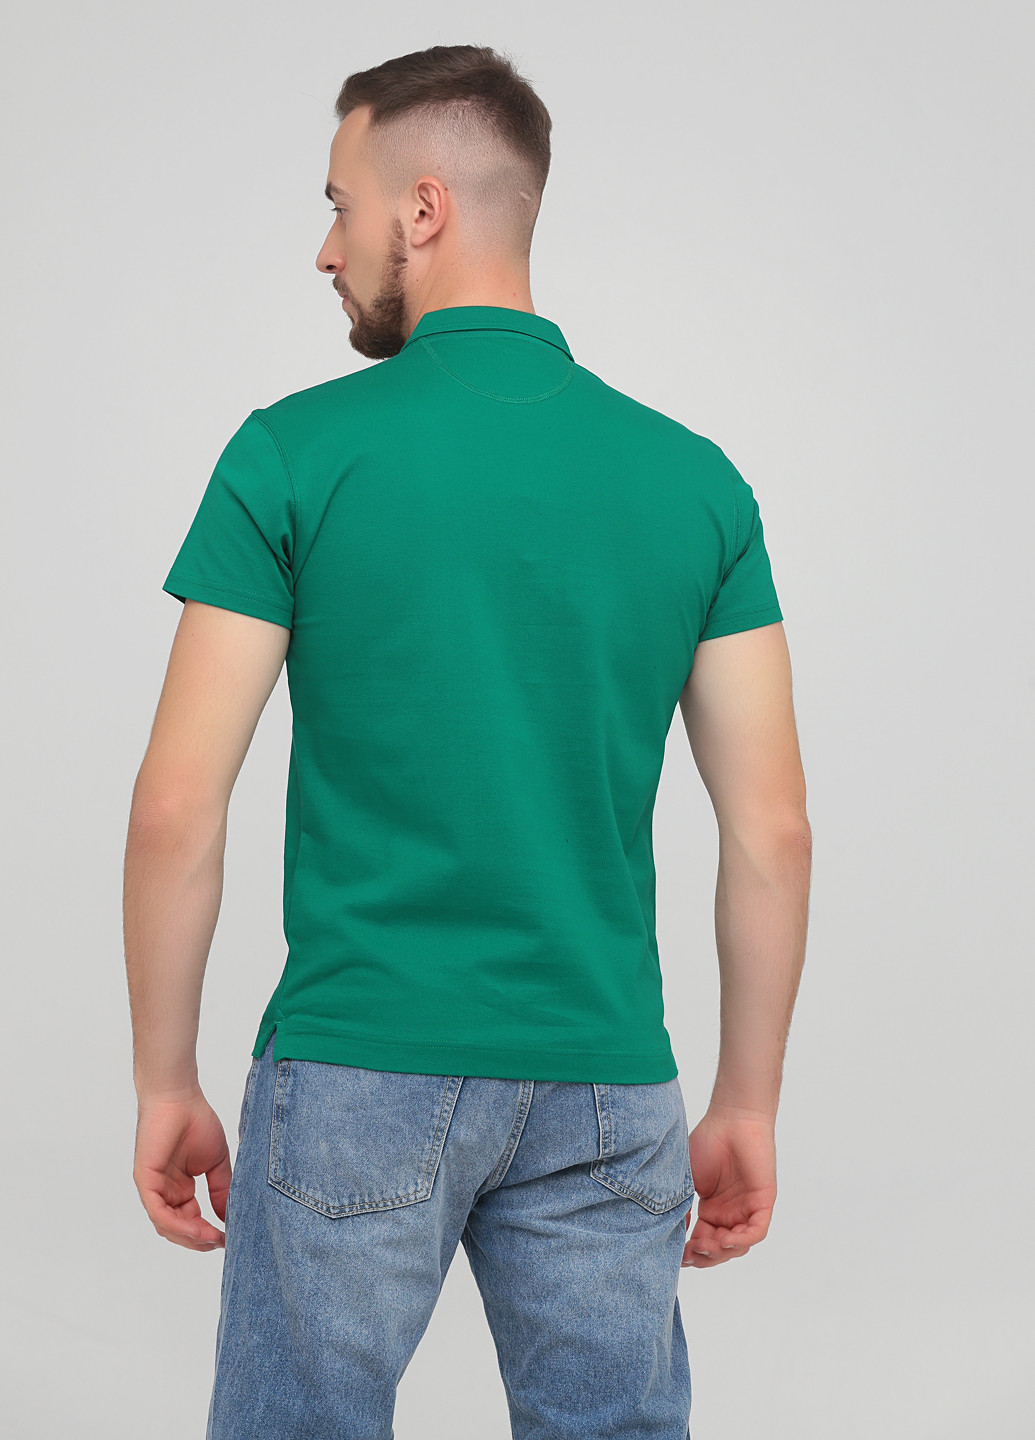 Изумрудная футболка-поло для мужчин La Martina однотонная